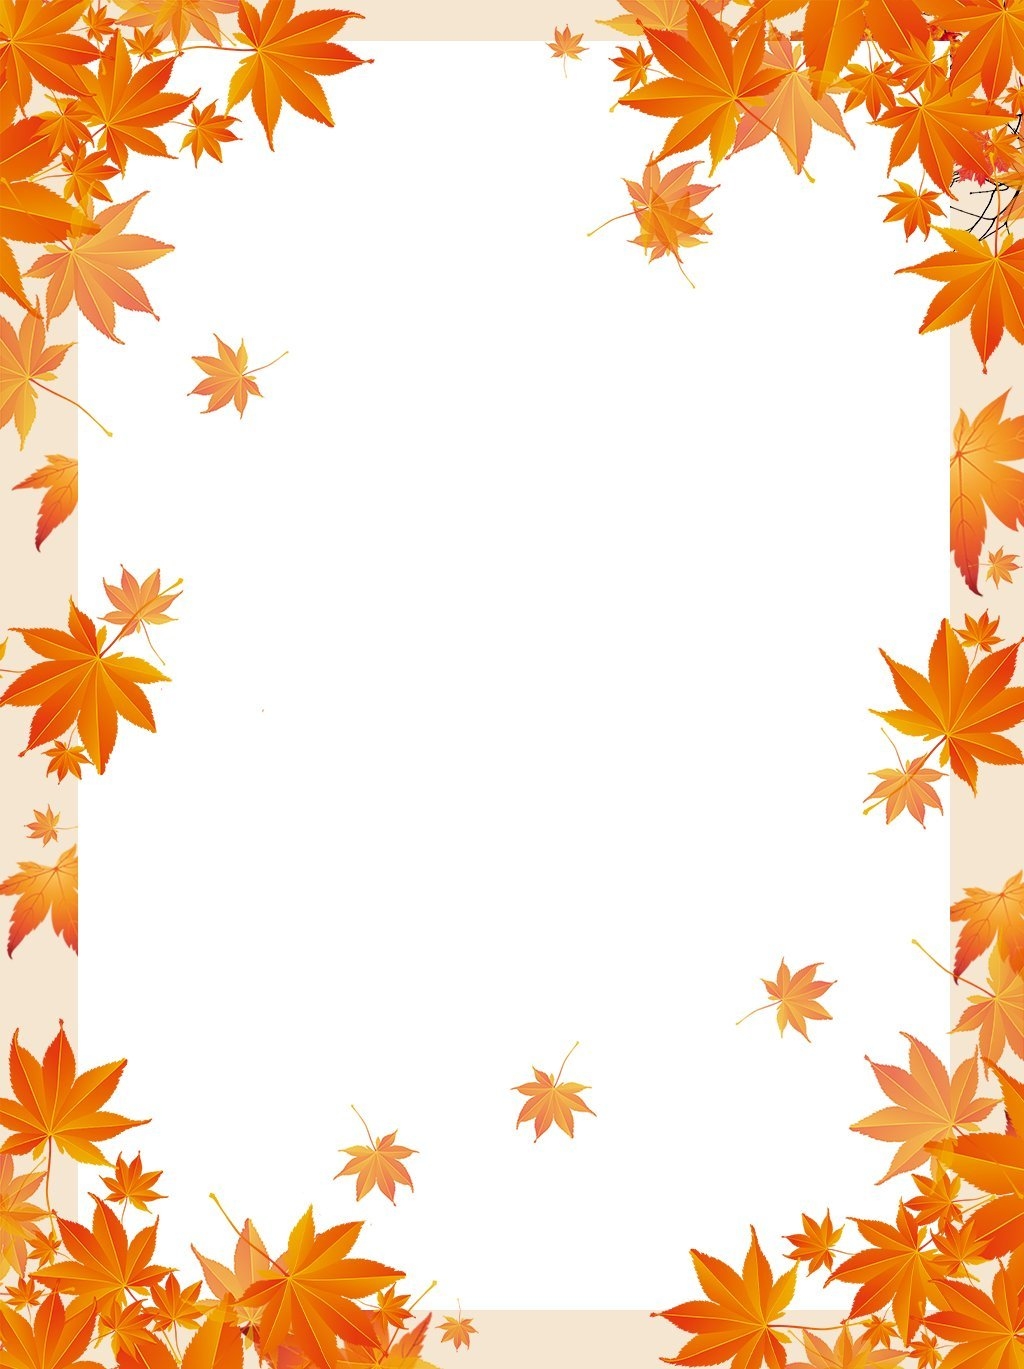 Осенние рамки » Фото в рамку - Вставить фото в рамку онлайн!